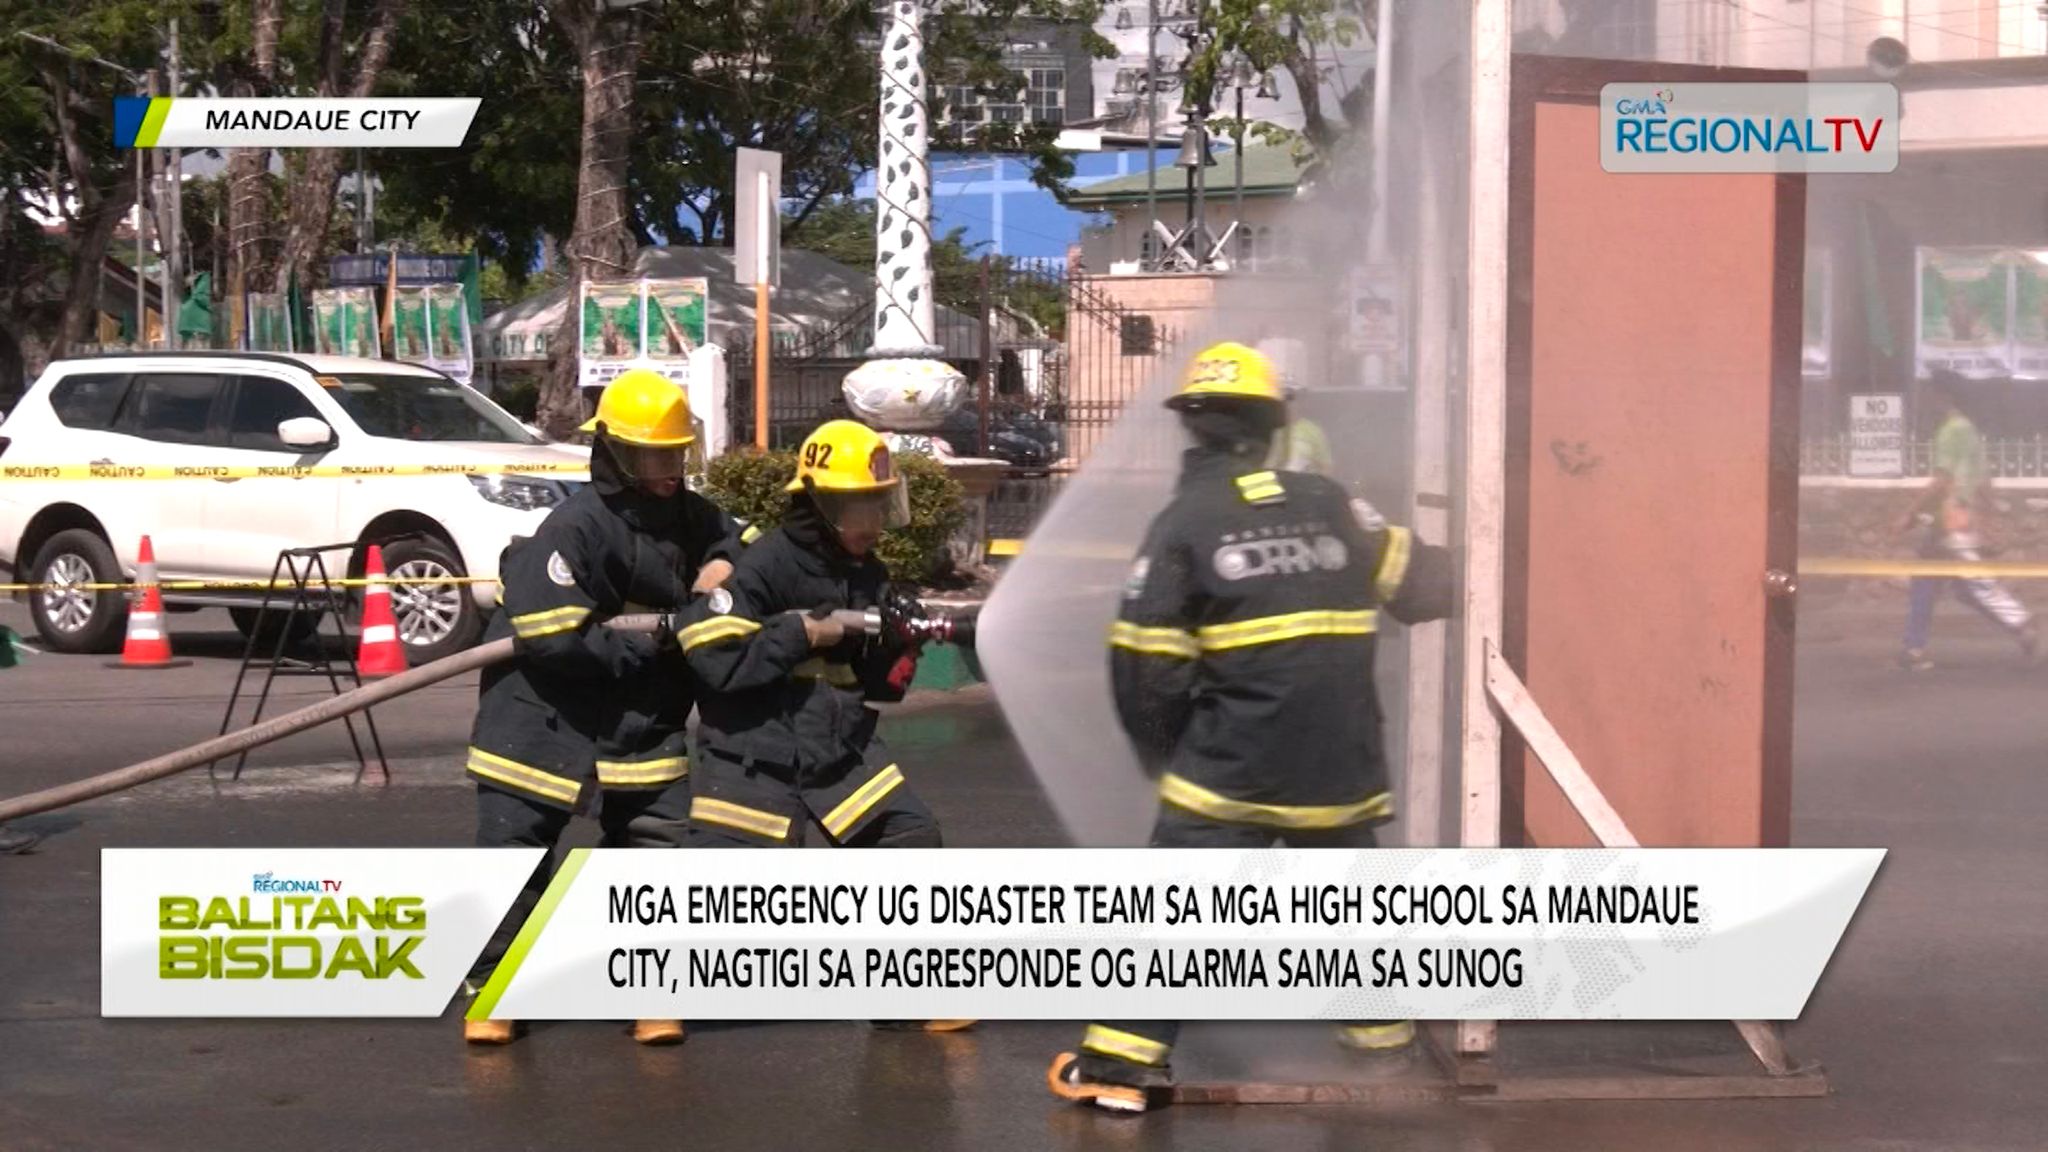 Mga emergency ug disaster team sa high school sa Mandaue, nagtigi